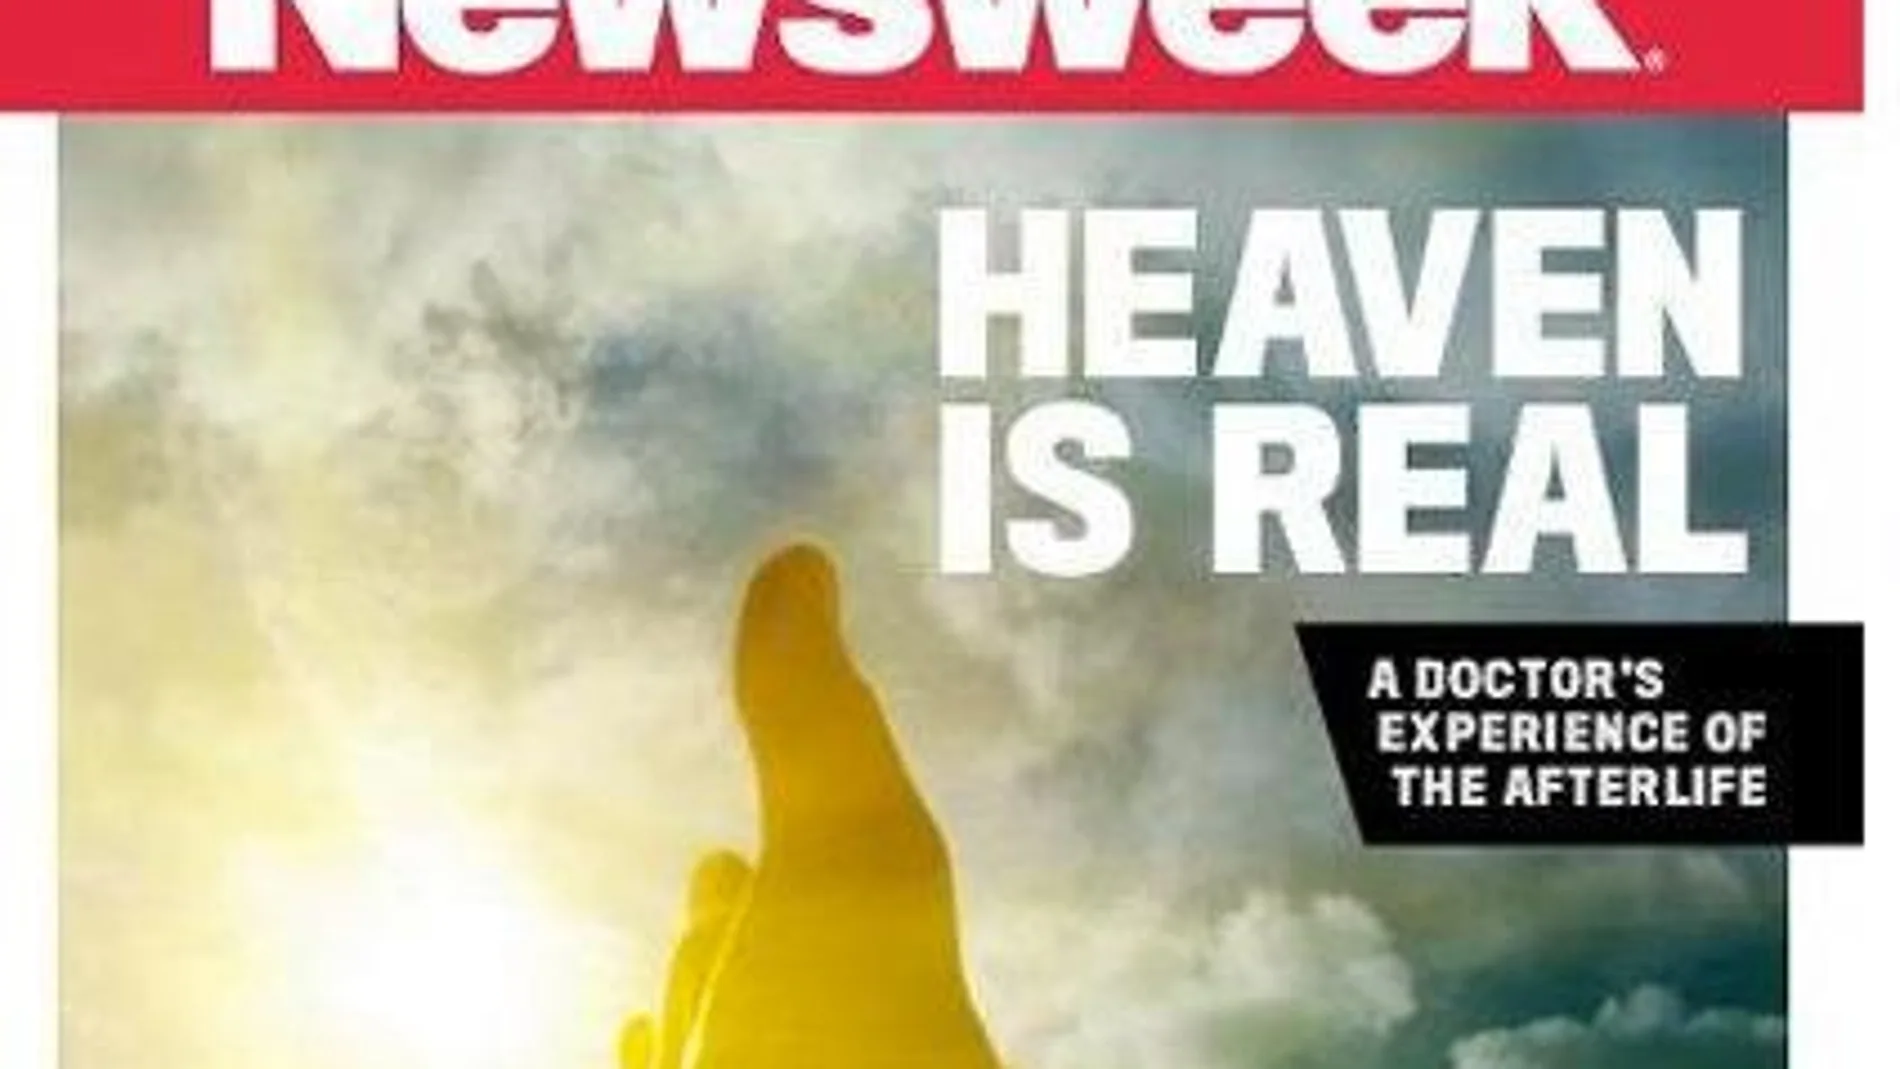 Portada de Newsweek